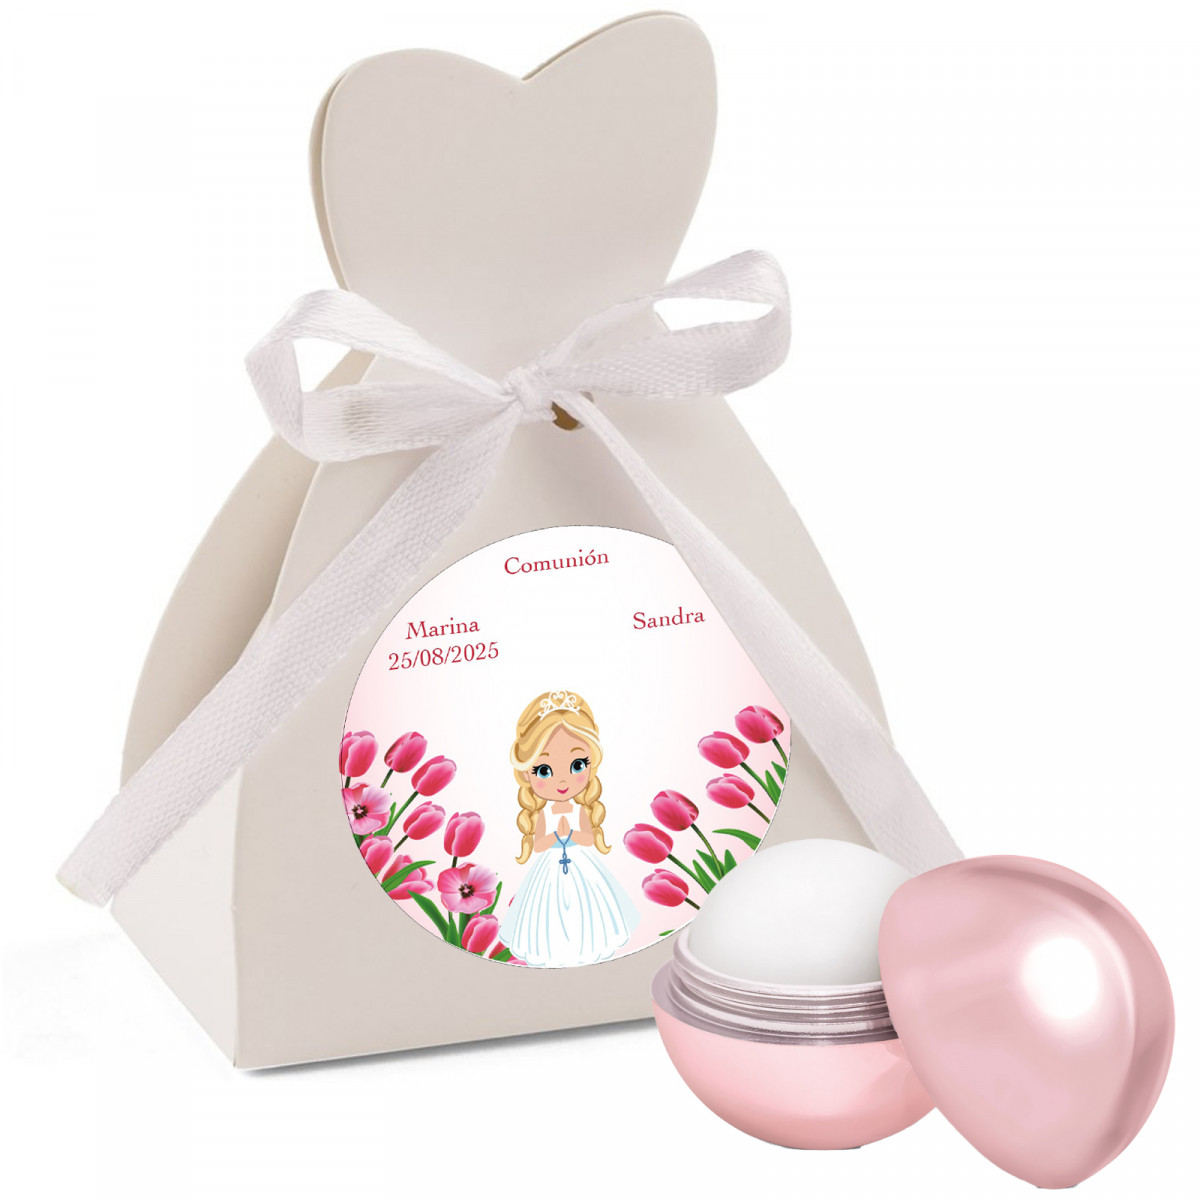 Cacao labial bola en caja personalizado con adhesivo para comunión